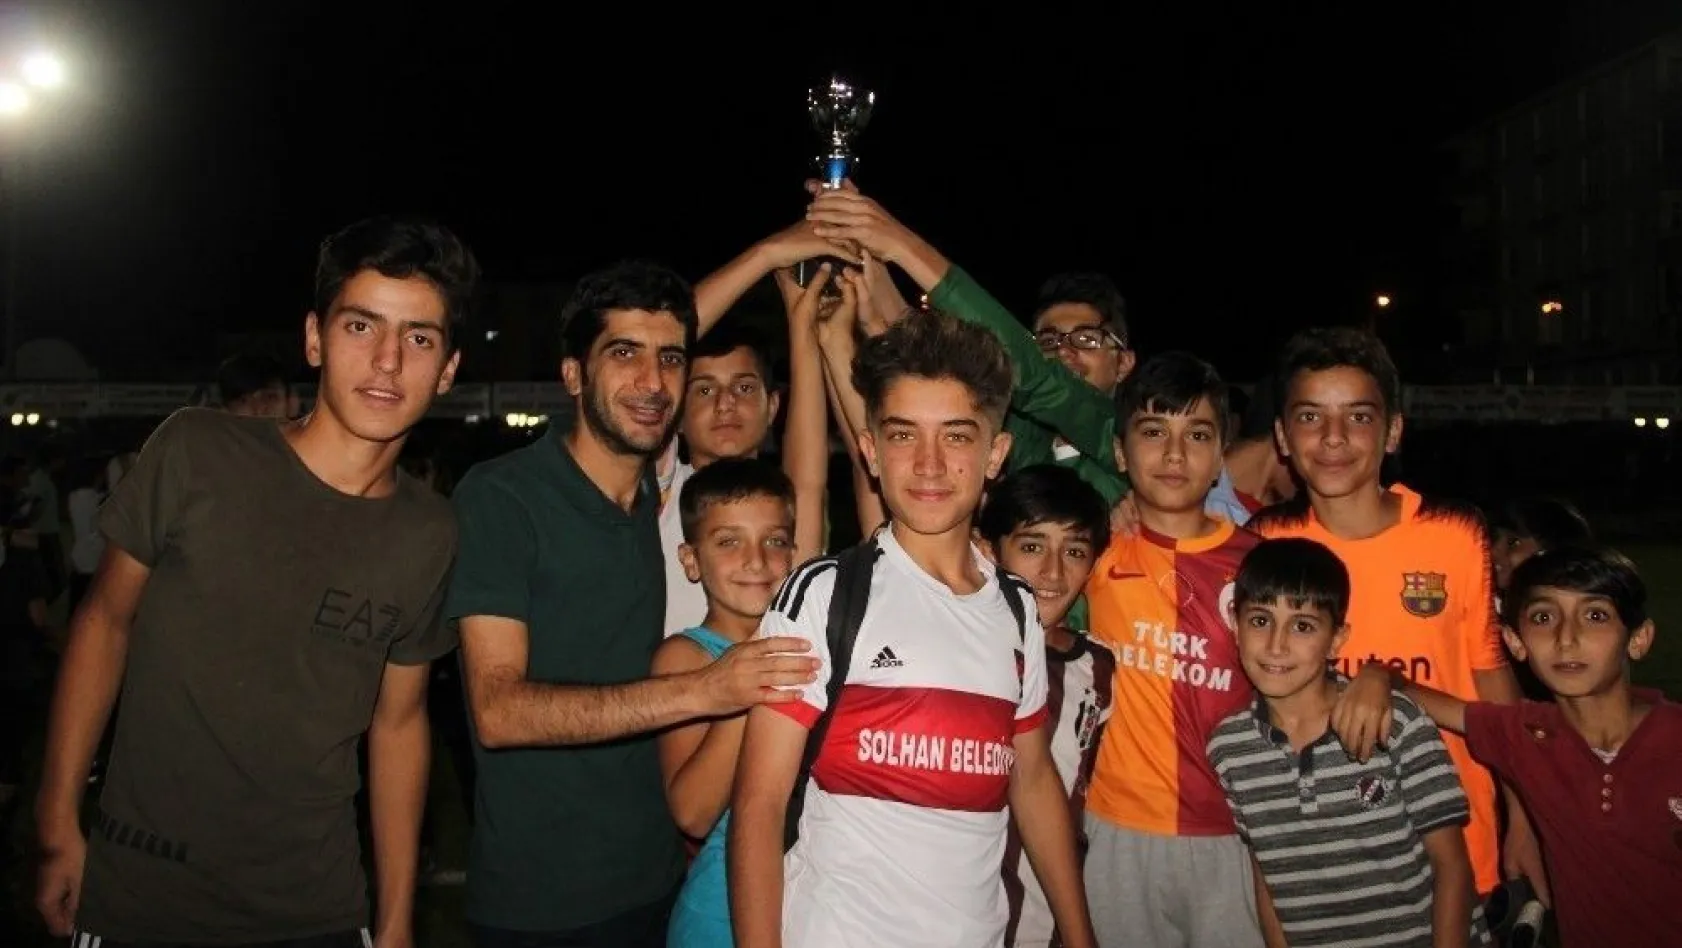 Solhan'da çocuklar için turnuva düzenlendi
